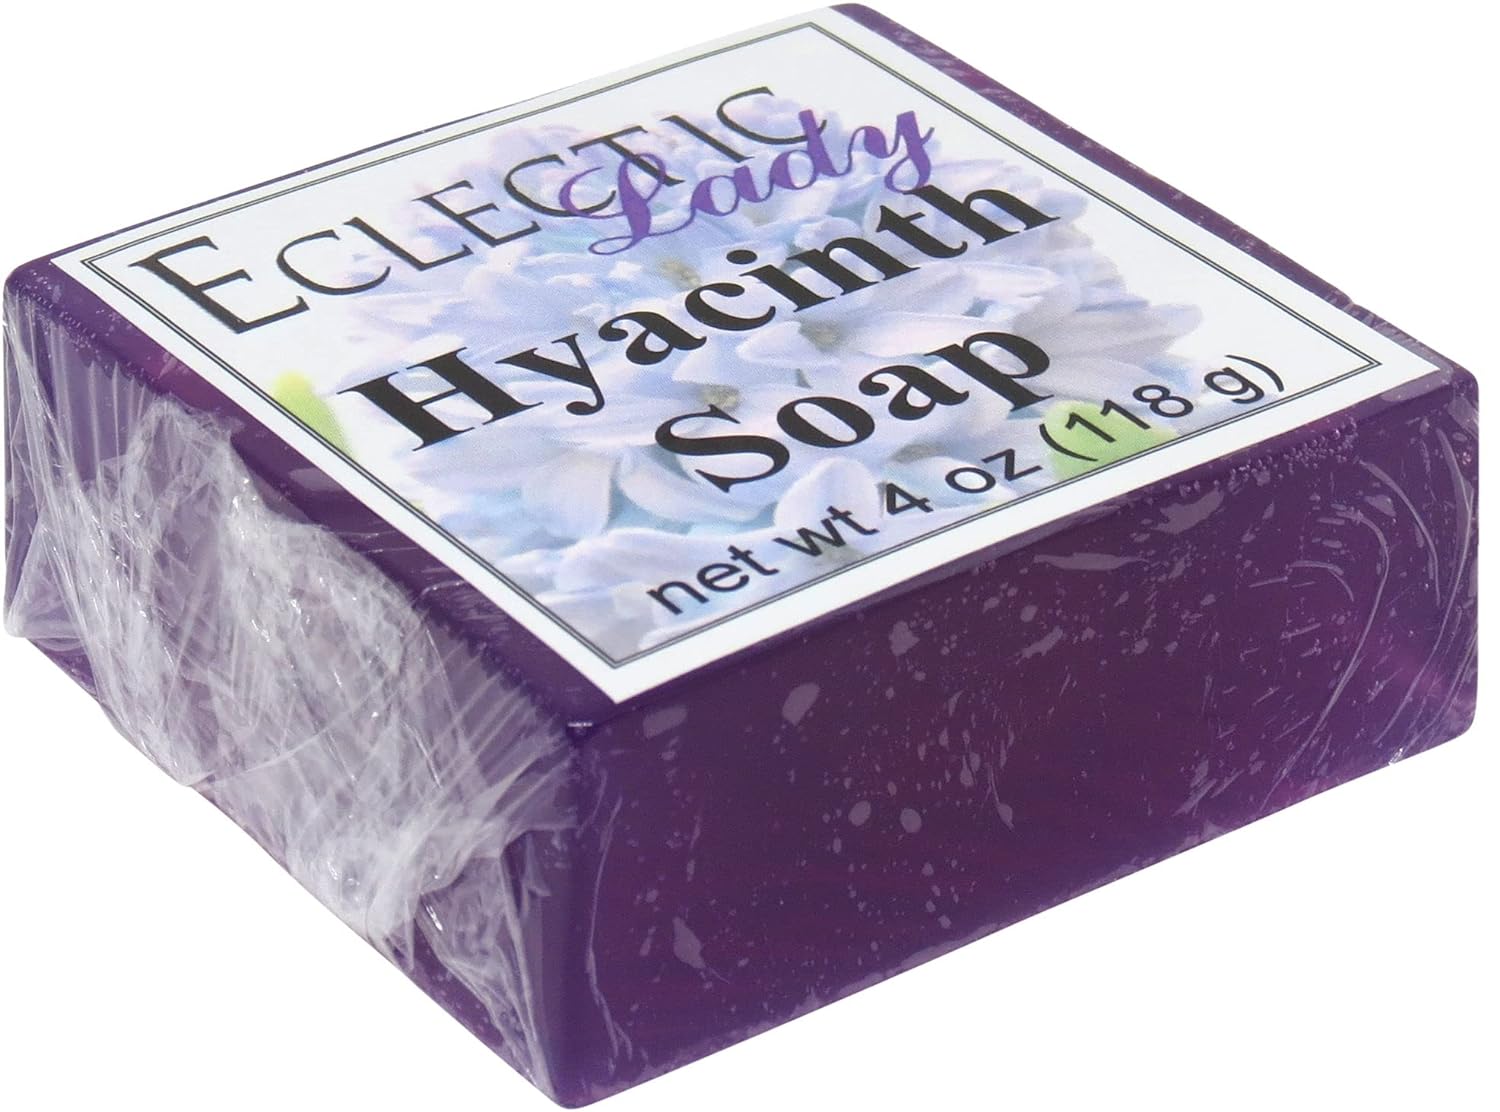 Esupli.com  Eclectic Lady Hyacinth Glycerin Soap, 4  Bar